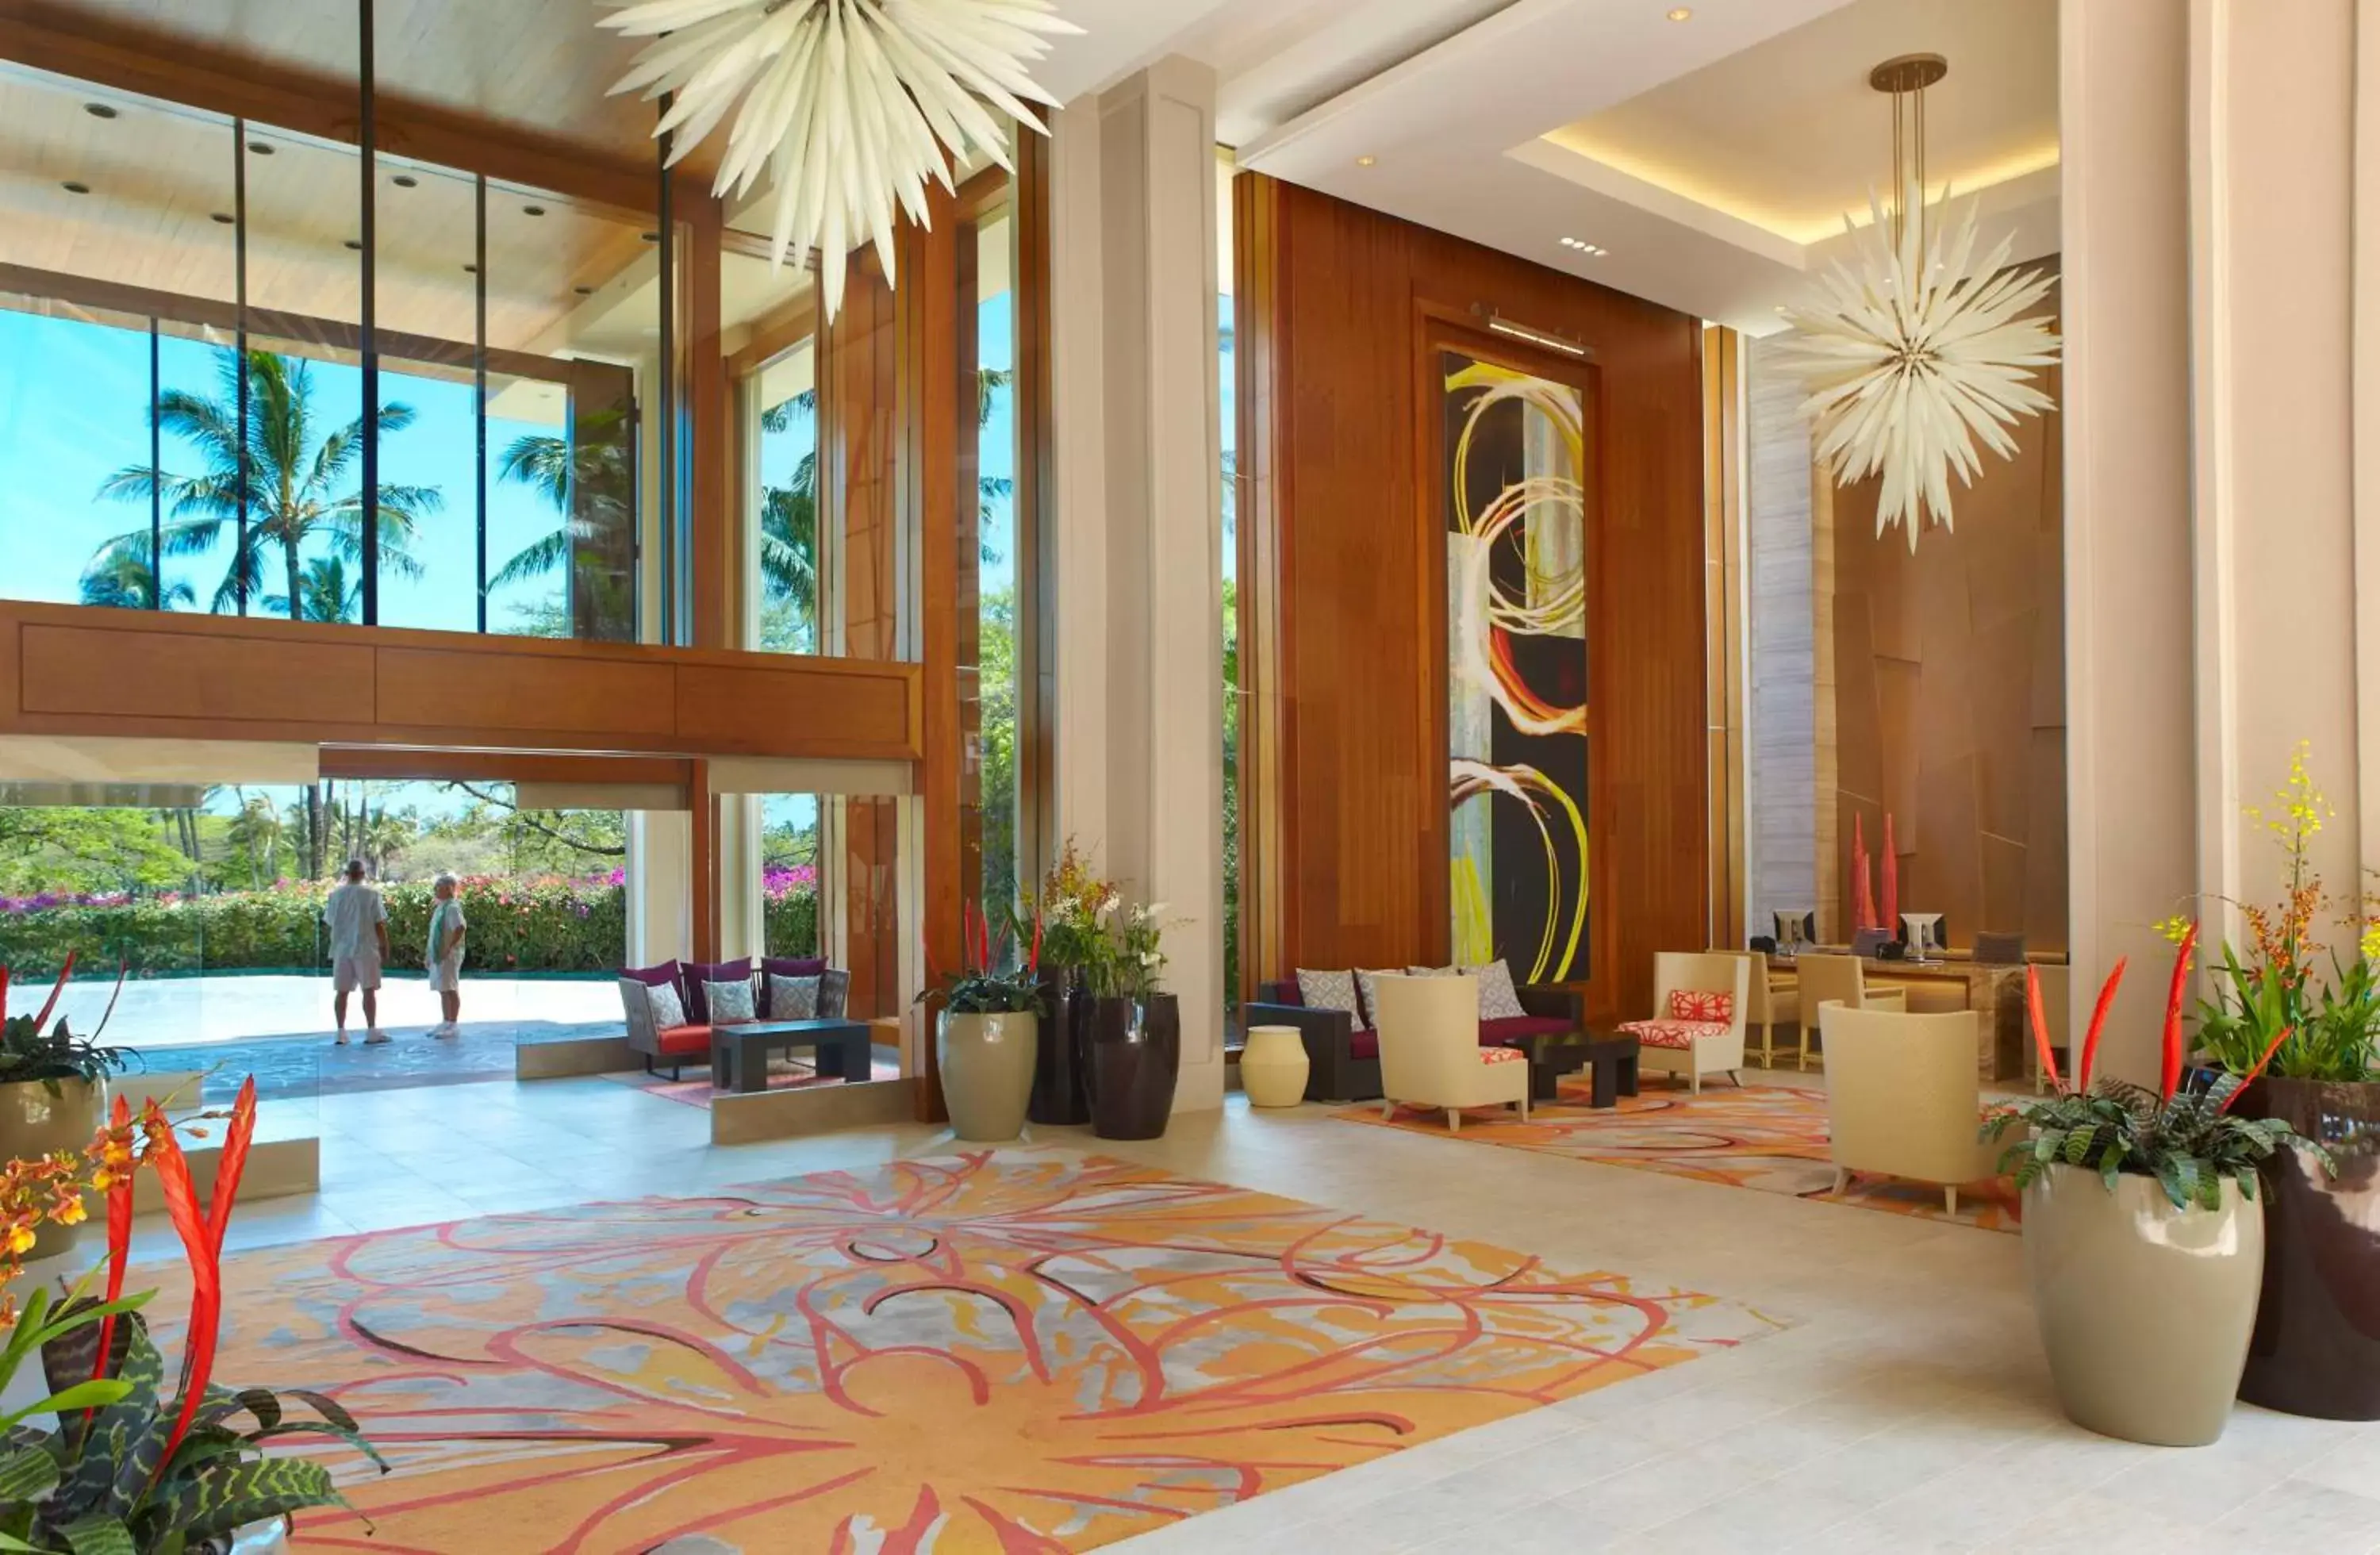 Lobby or reception, Lobby/Reception in Hyatt Regency Maui Resort & Spa